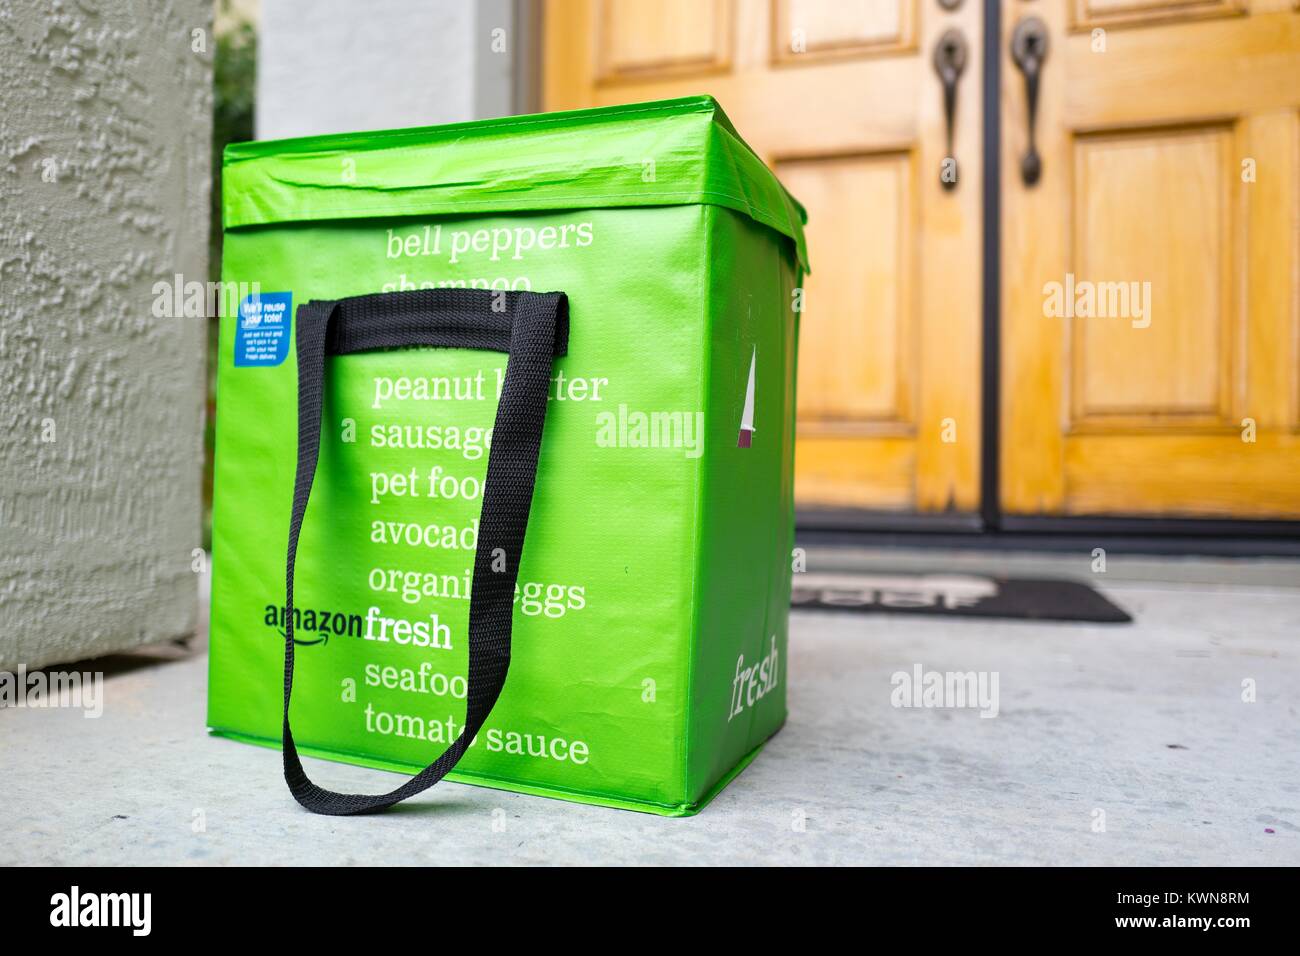 Green pack freddo tote per Amazon fresco servizio di consegna di generi  alimentari, con Amazon logo e testo elenco di generi alimentari che possono  essere ordinati tramite il servizio, sulla soglia di